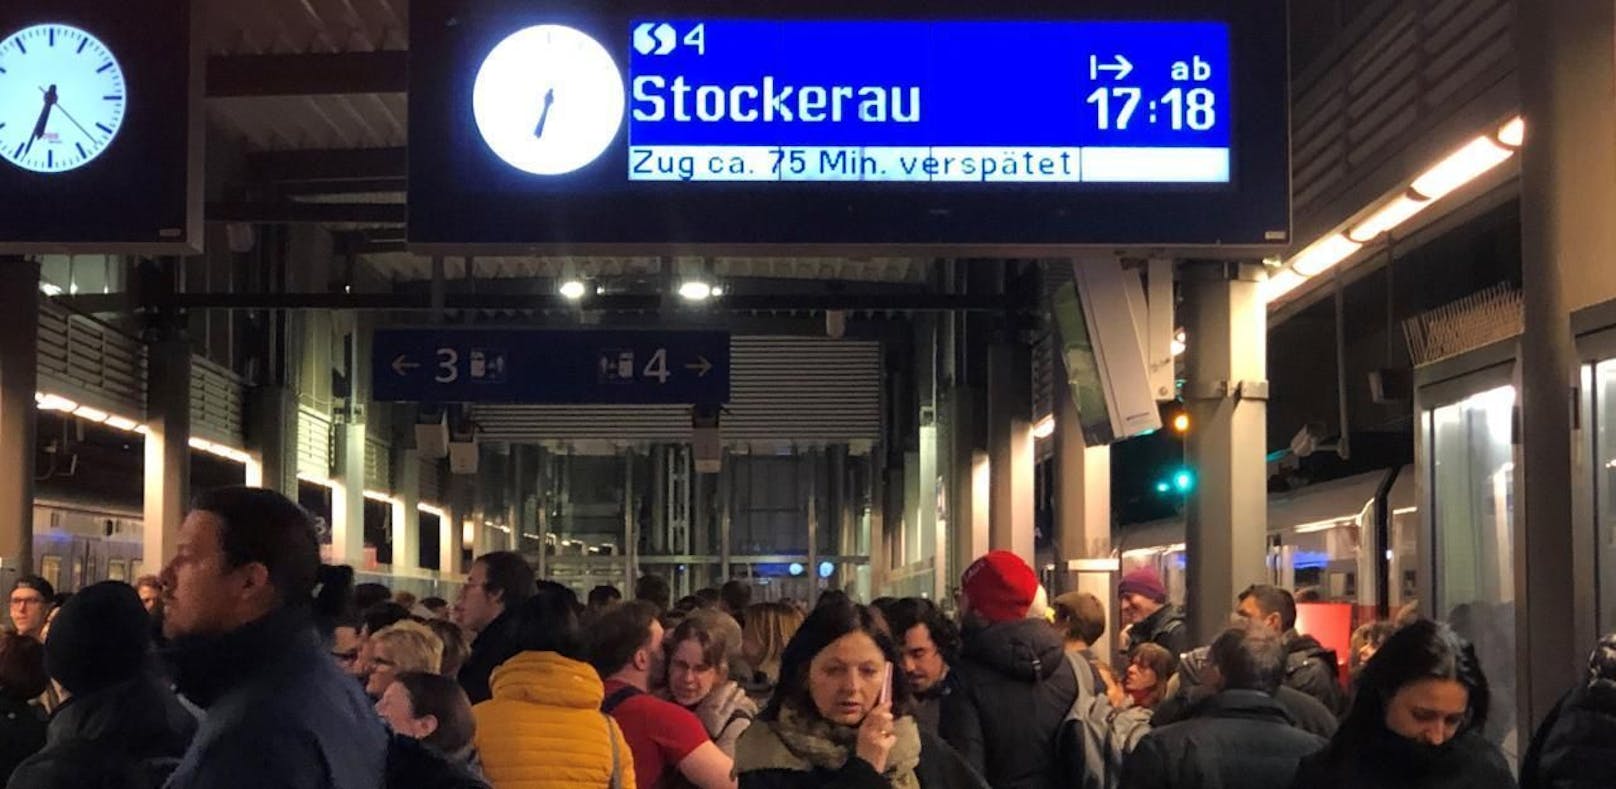 Am Dienstagabend gab es wegen einer Stellwerkstörung Verzögerungen im S-Bahn-Verkehr.